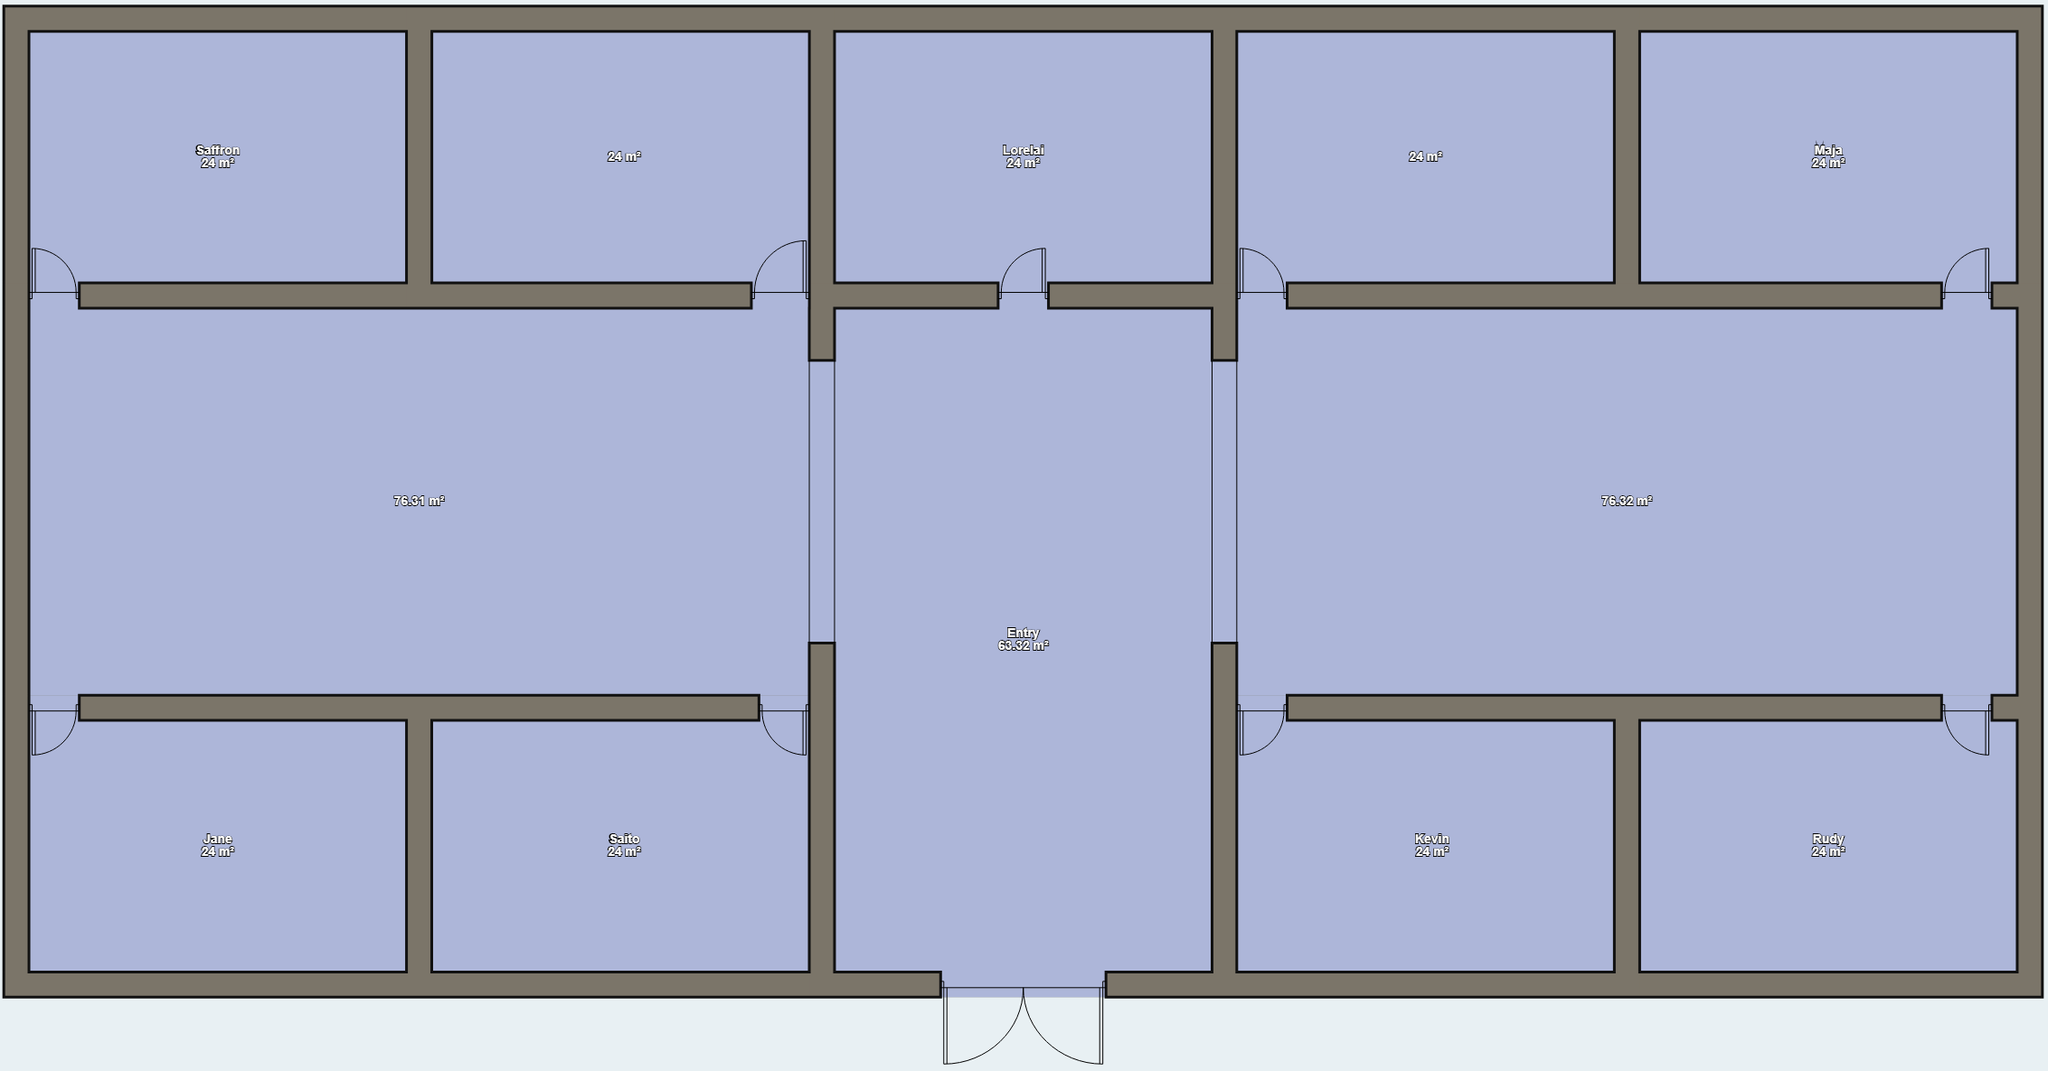 Dorm Floor Plan